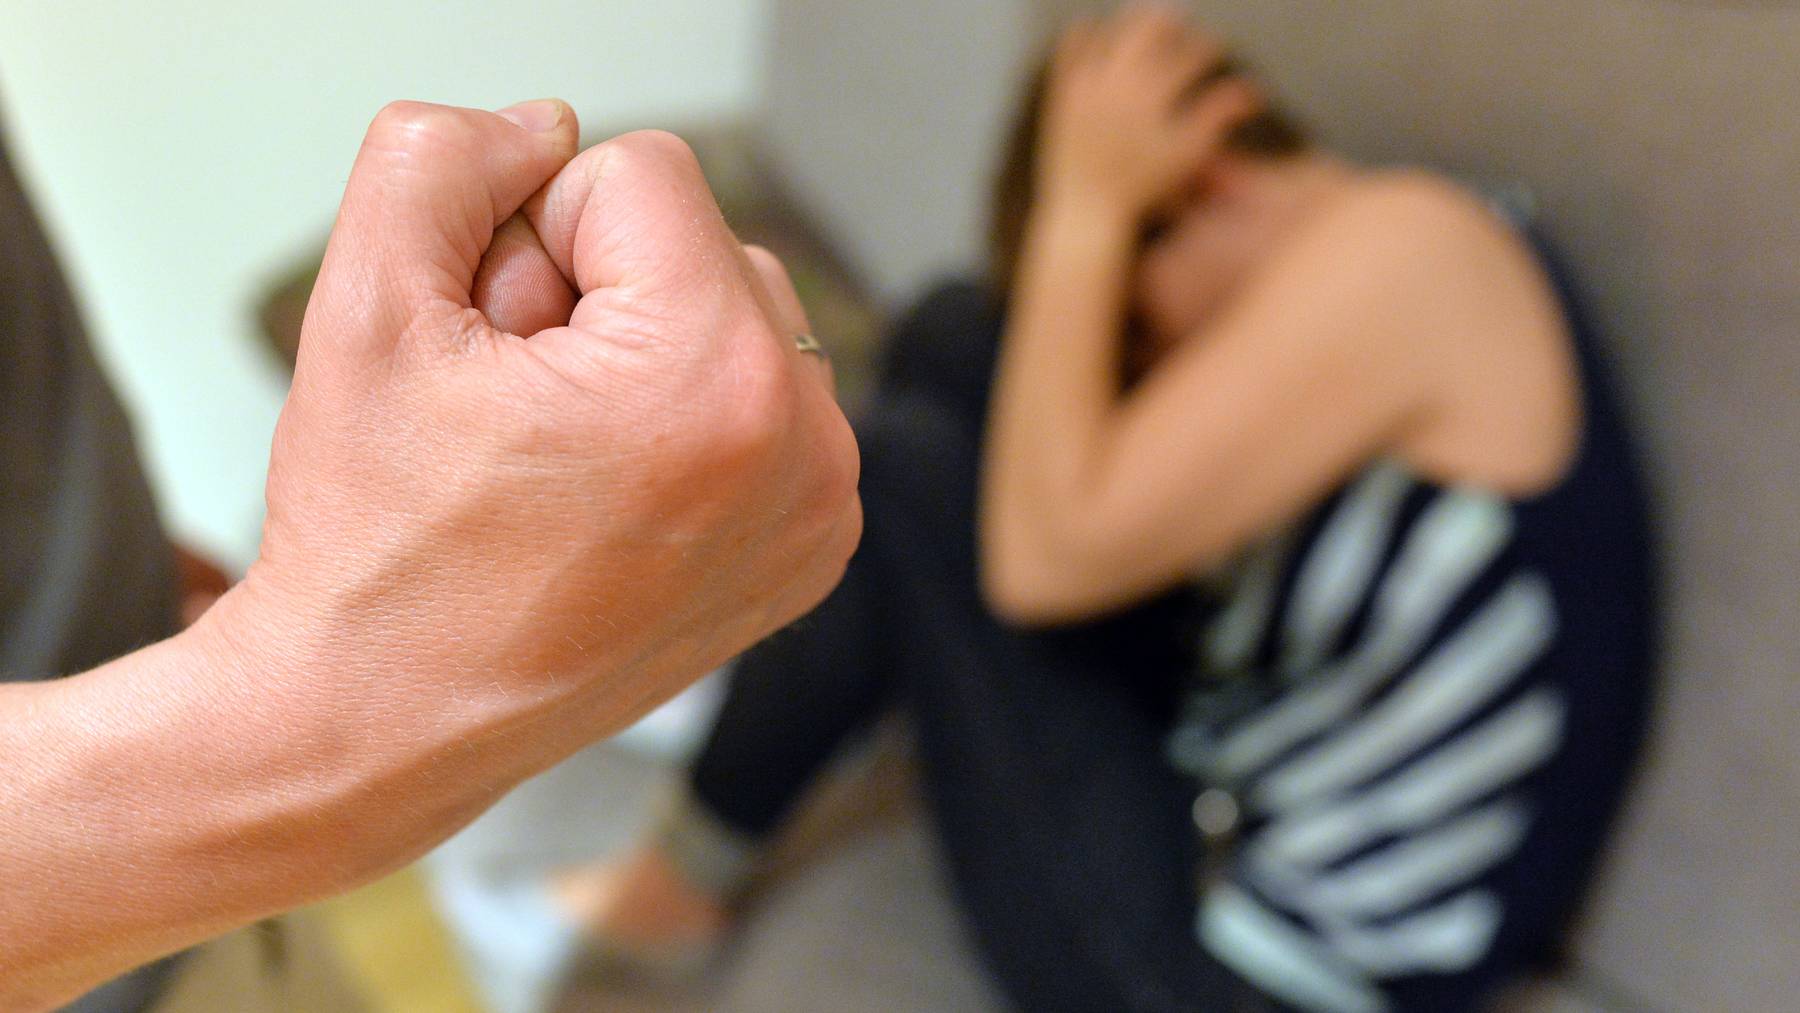 Der Kanton Zürich ergreift Sofortmassnahmen für die Hilfe von Opfern von Häuslicher Gewalt. (Symbolbild)